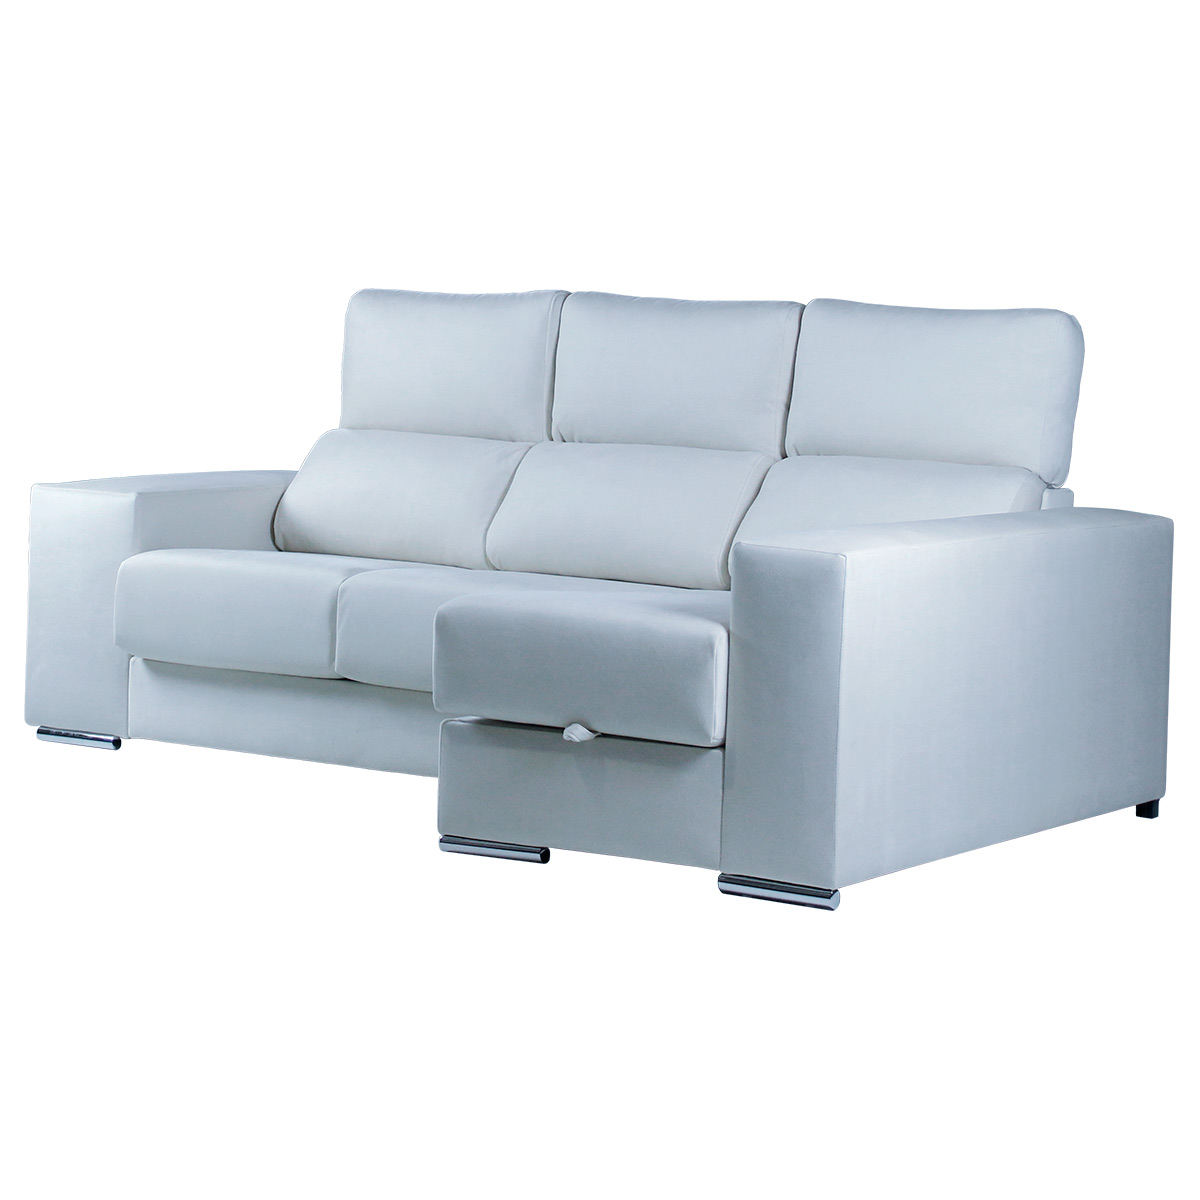 Sofa chaise longue Corinto